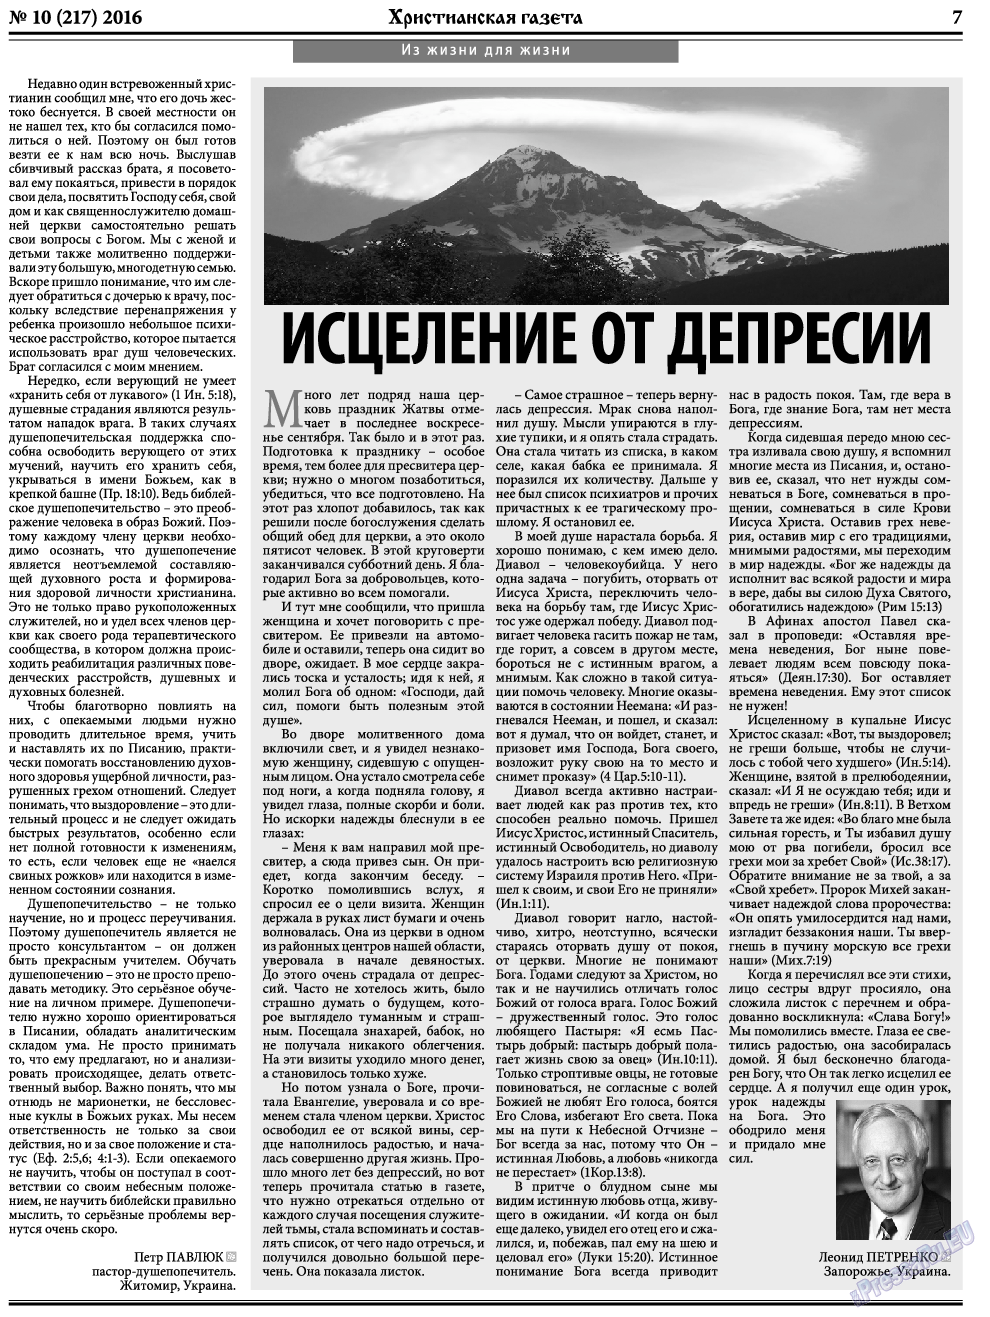 Христианская газета, газета. 2016 №10 стр.7